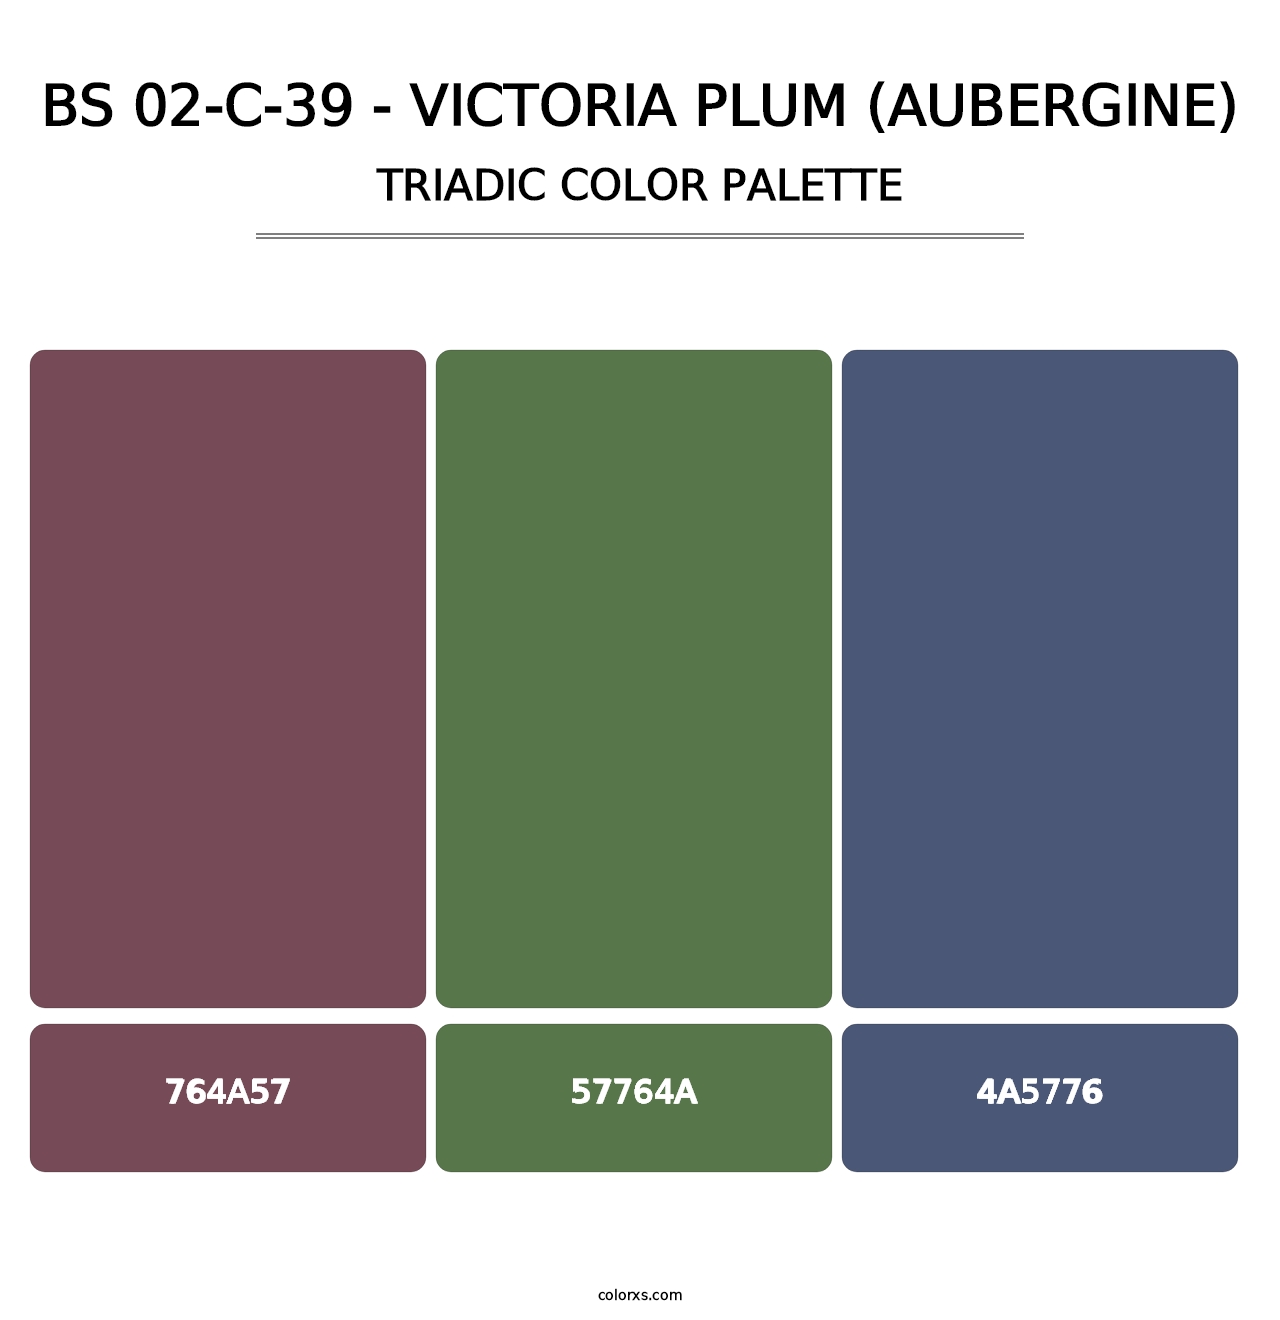 BS 02-C-39 - Victoria Plum (Aubergine) - Triadic Color Palette